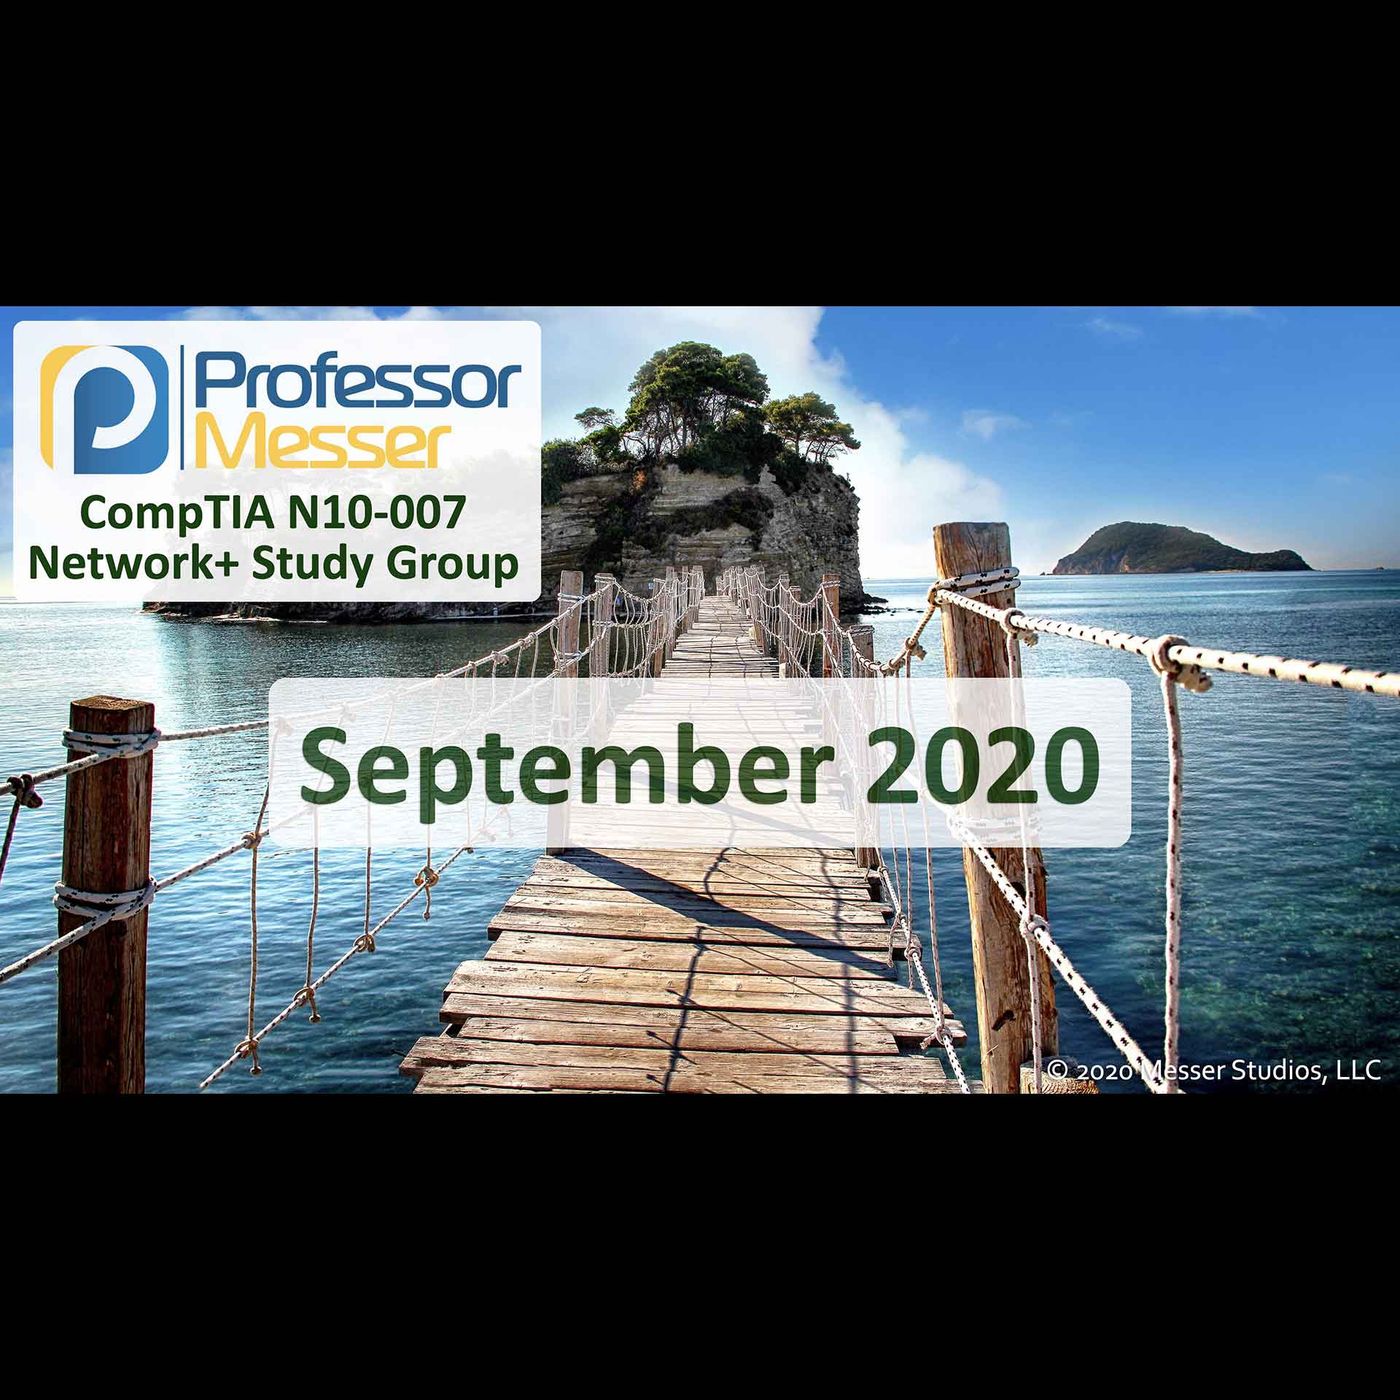 Professor Messer's Network+ Study Group - September 2020